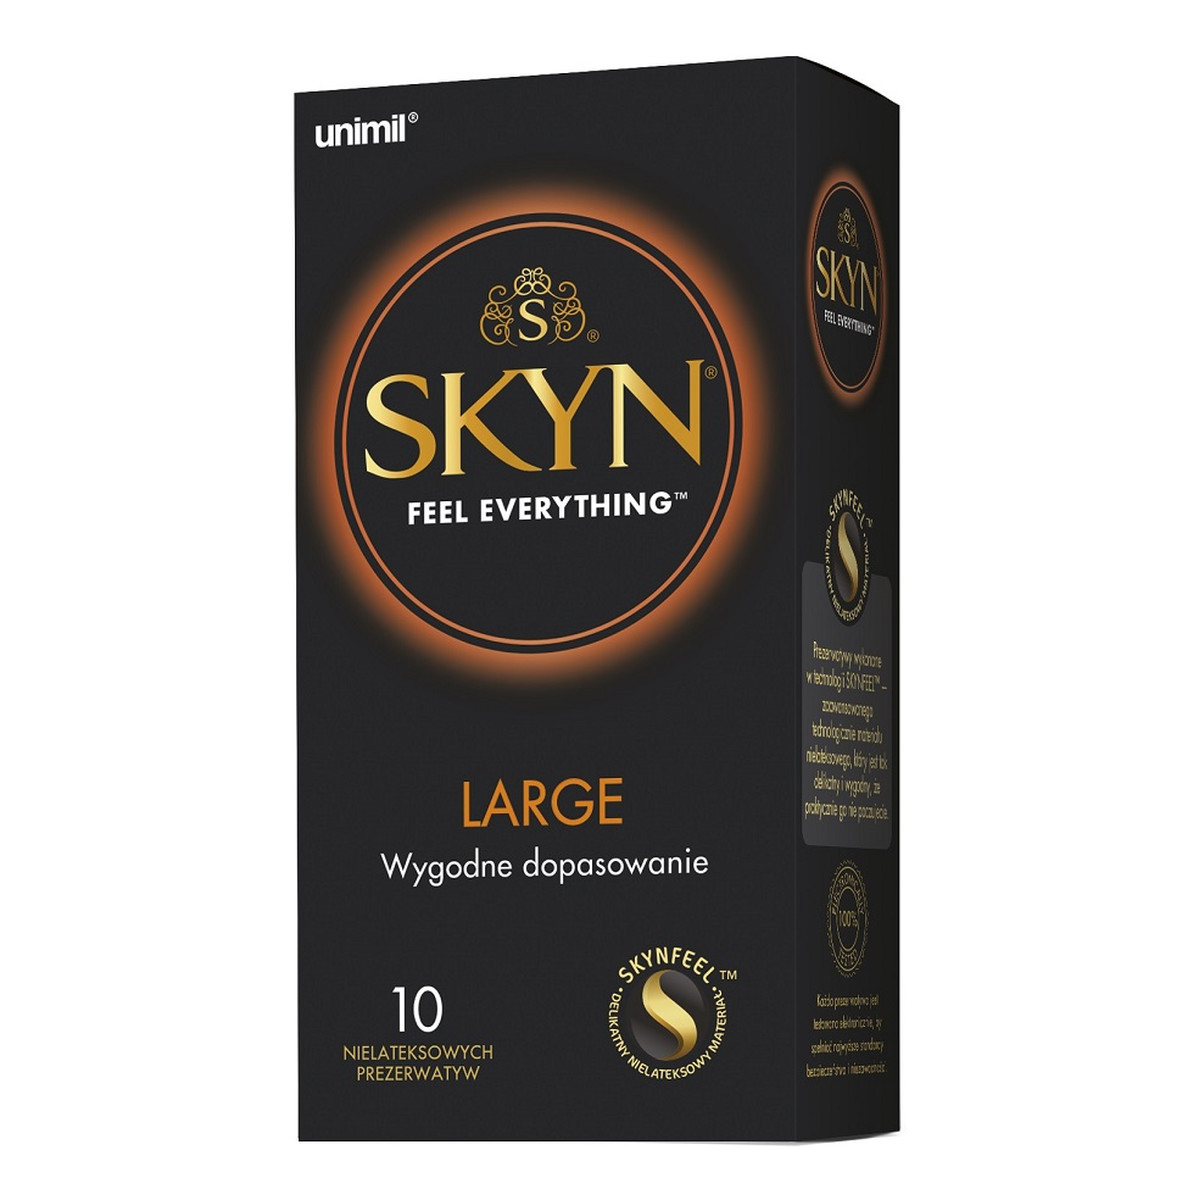 Unimil Skyn large nielateksowe prezerwatywy 10szt